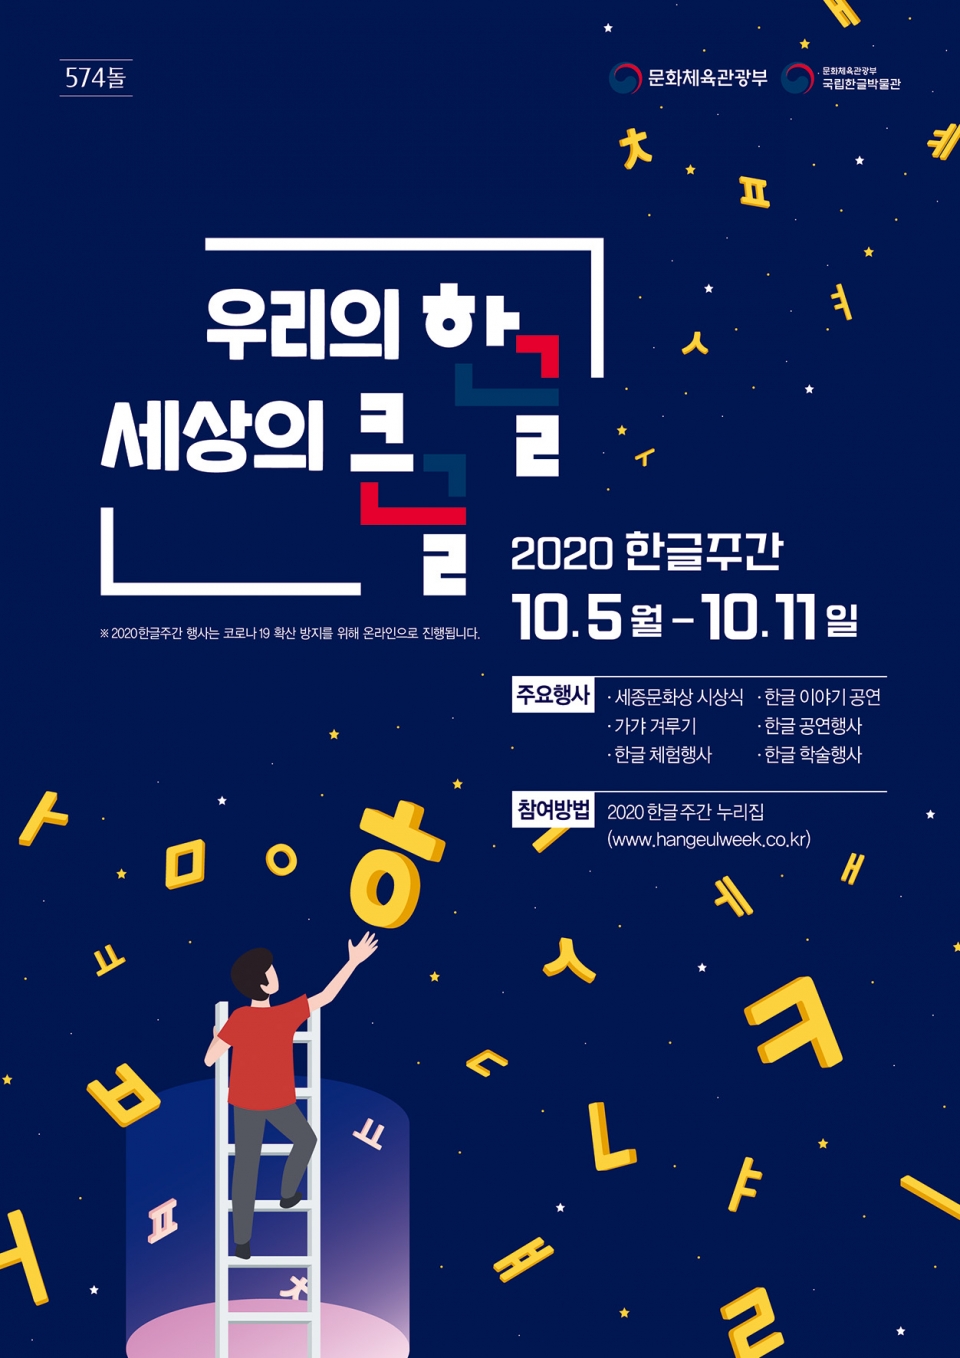 제574돌 한글날을 기념 ‘2020 한글주간’ 행사 개최(5일-11일까지)